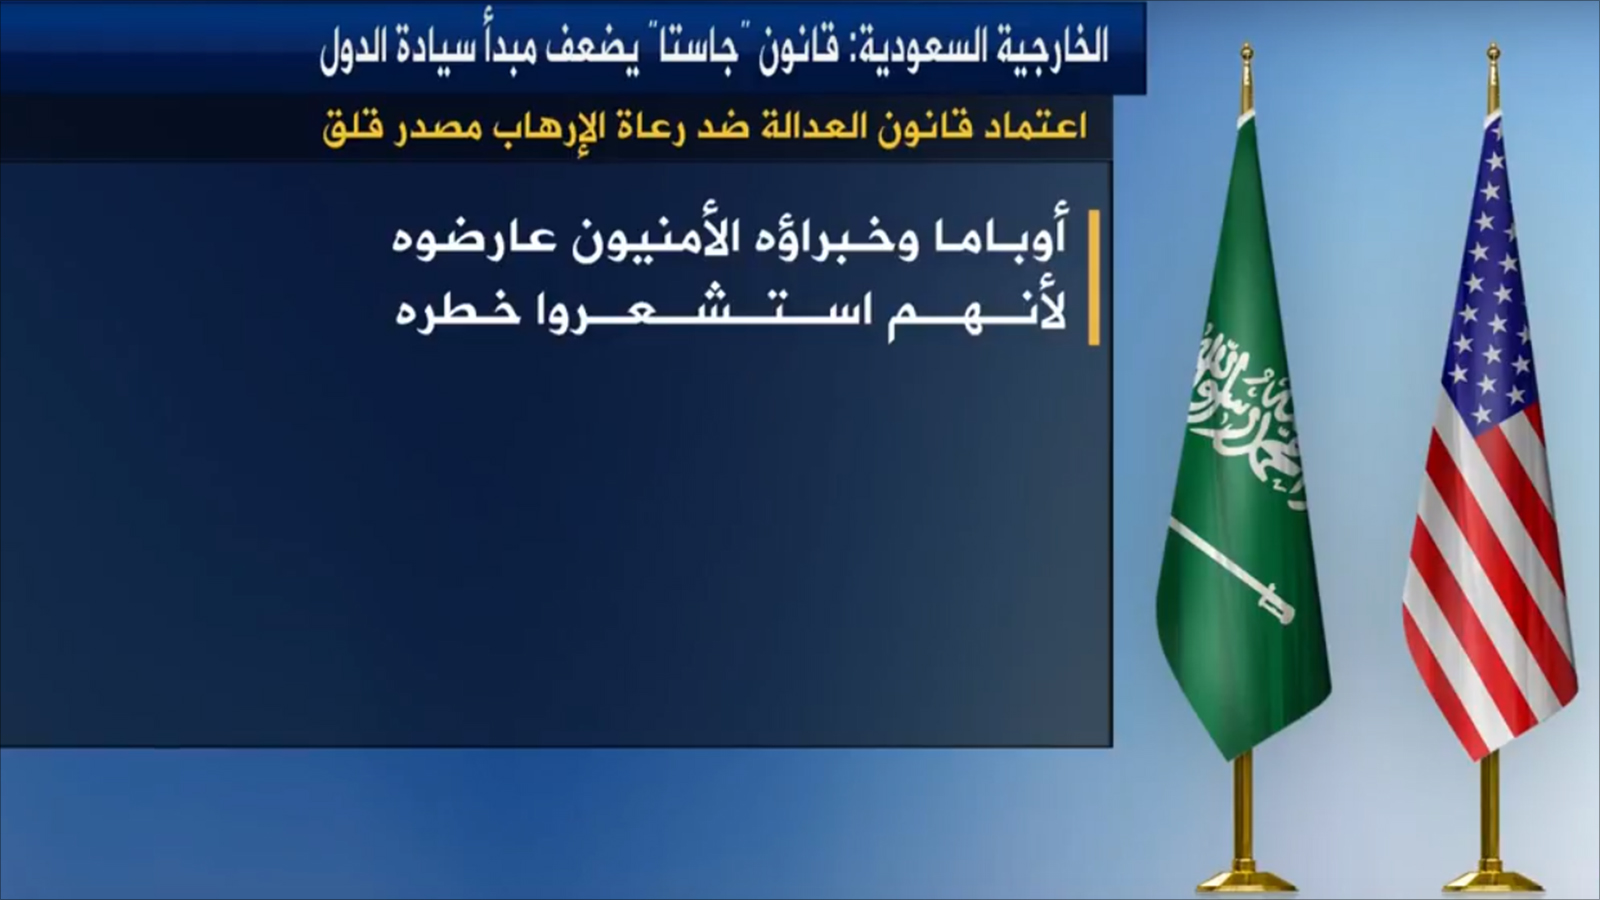 ‪الخارجية السعودية قالت إن قانون جاستا يضعف مبدأ سيادة الدول‬  (الجزيرة)